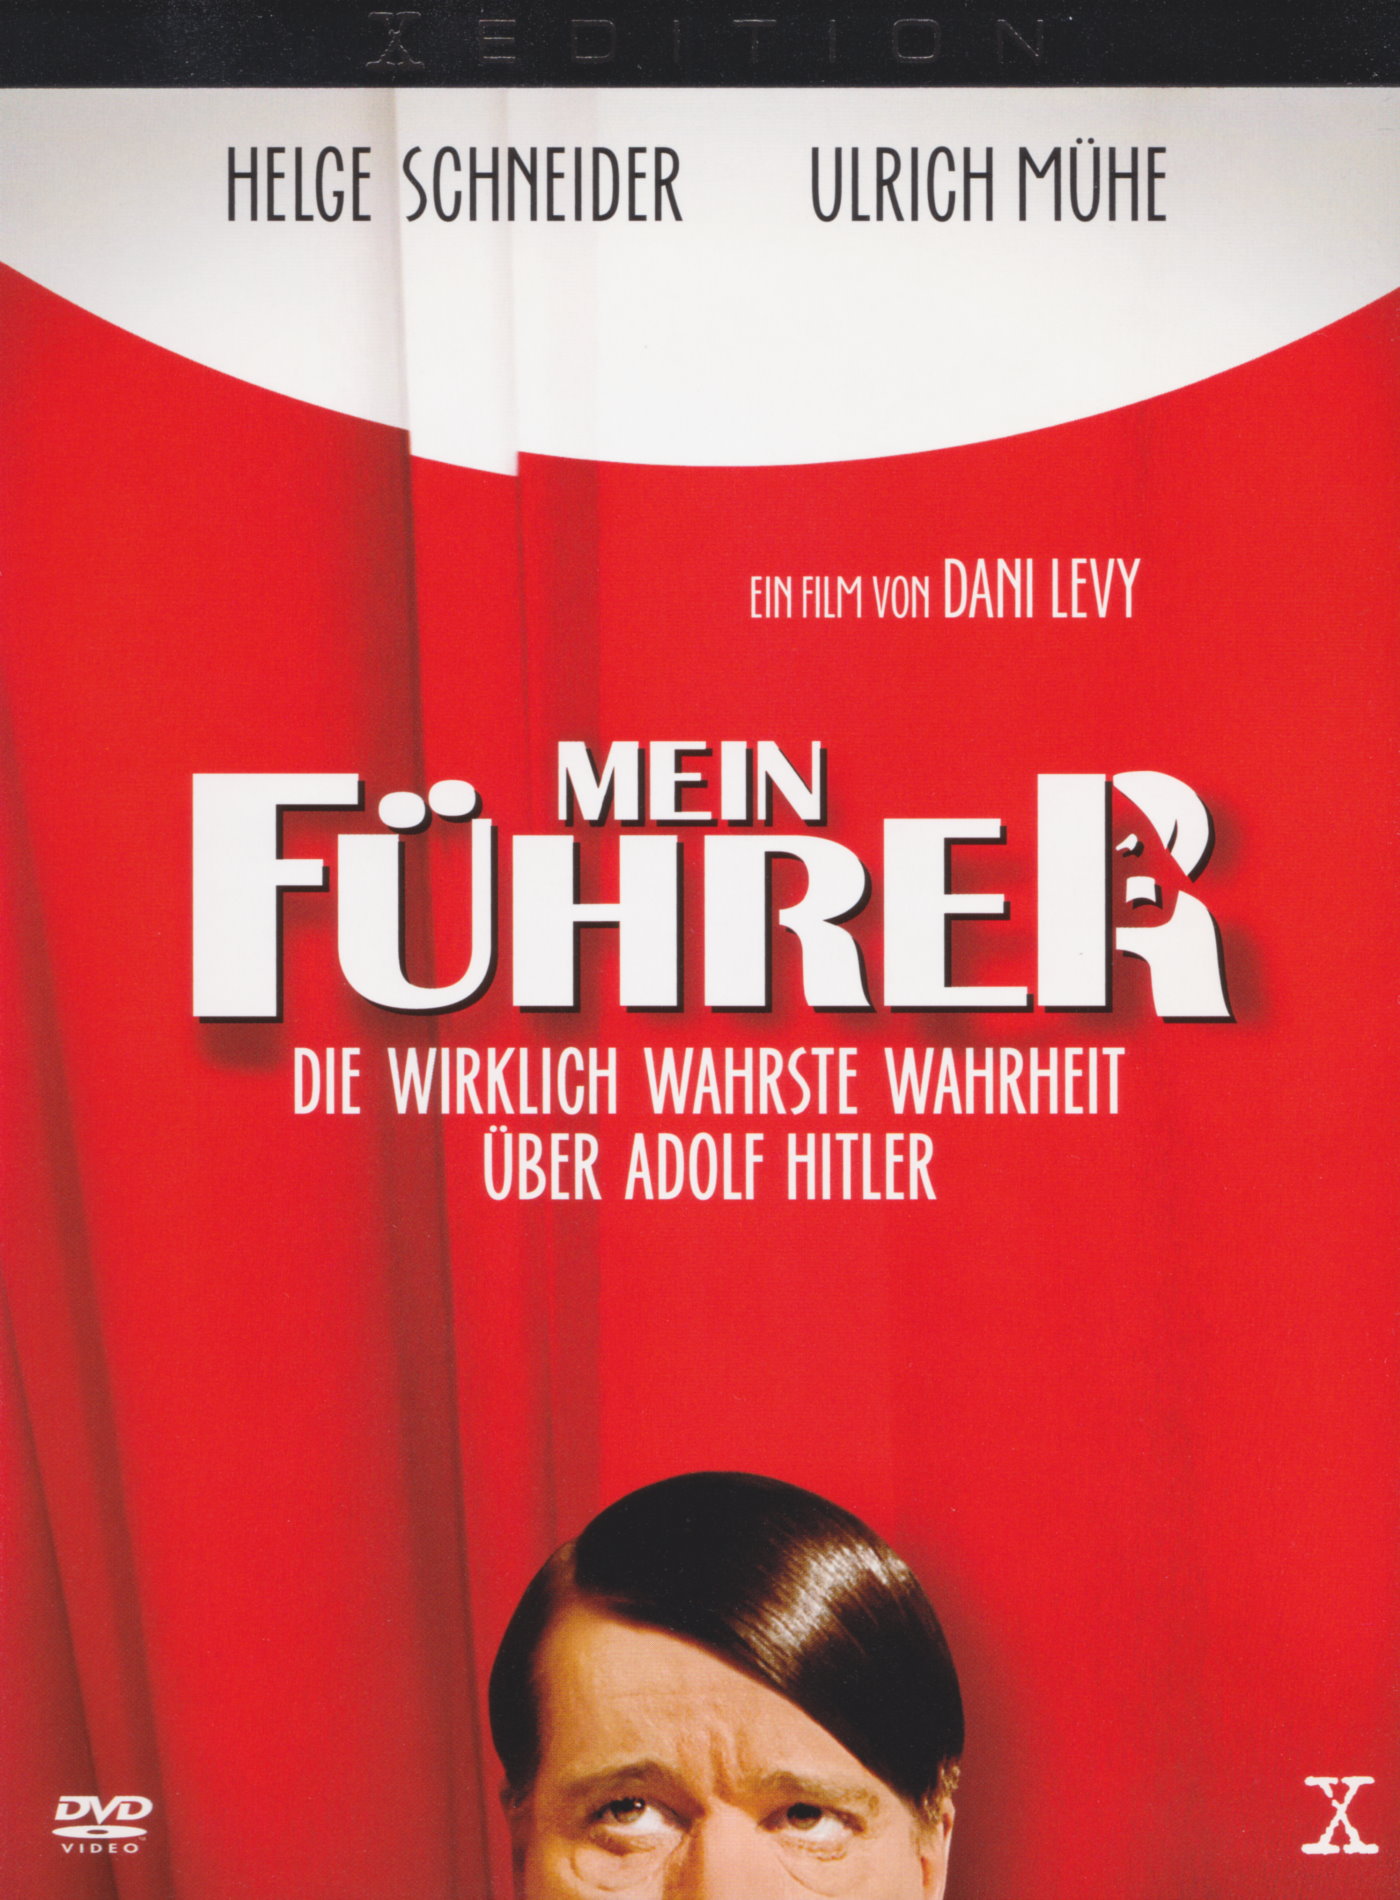 Cover - Mein Führer - Die wirklich wahrste Wahrheit über Adolf Hitler.jpg